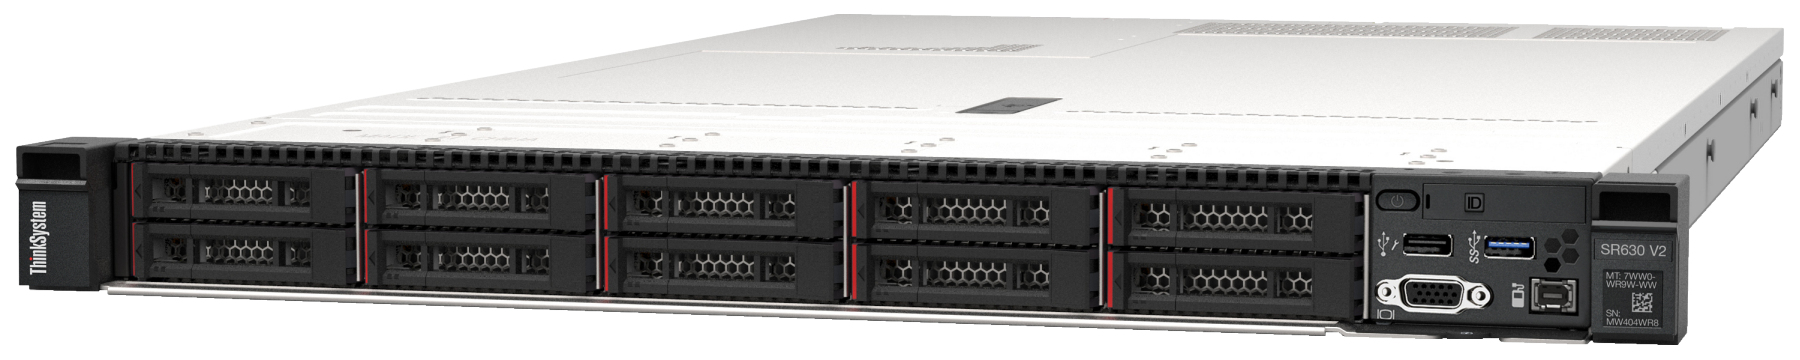 Сервер Lenovo ThinkSystem SR630 V2 (7Z71A05LEA). Фиксированная комплектация сервера